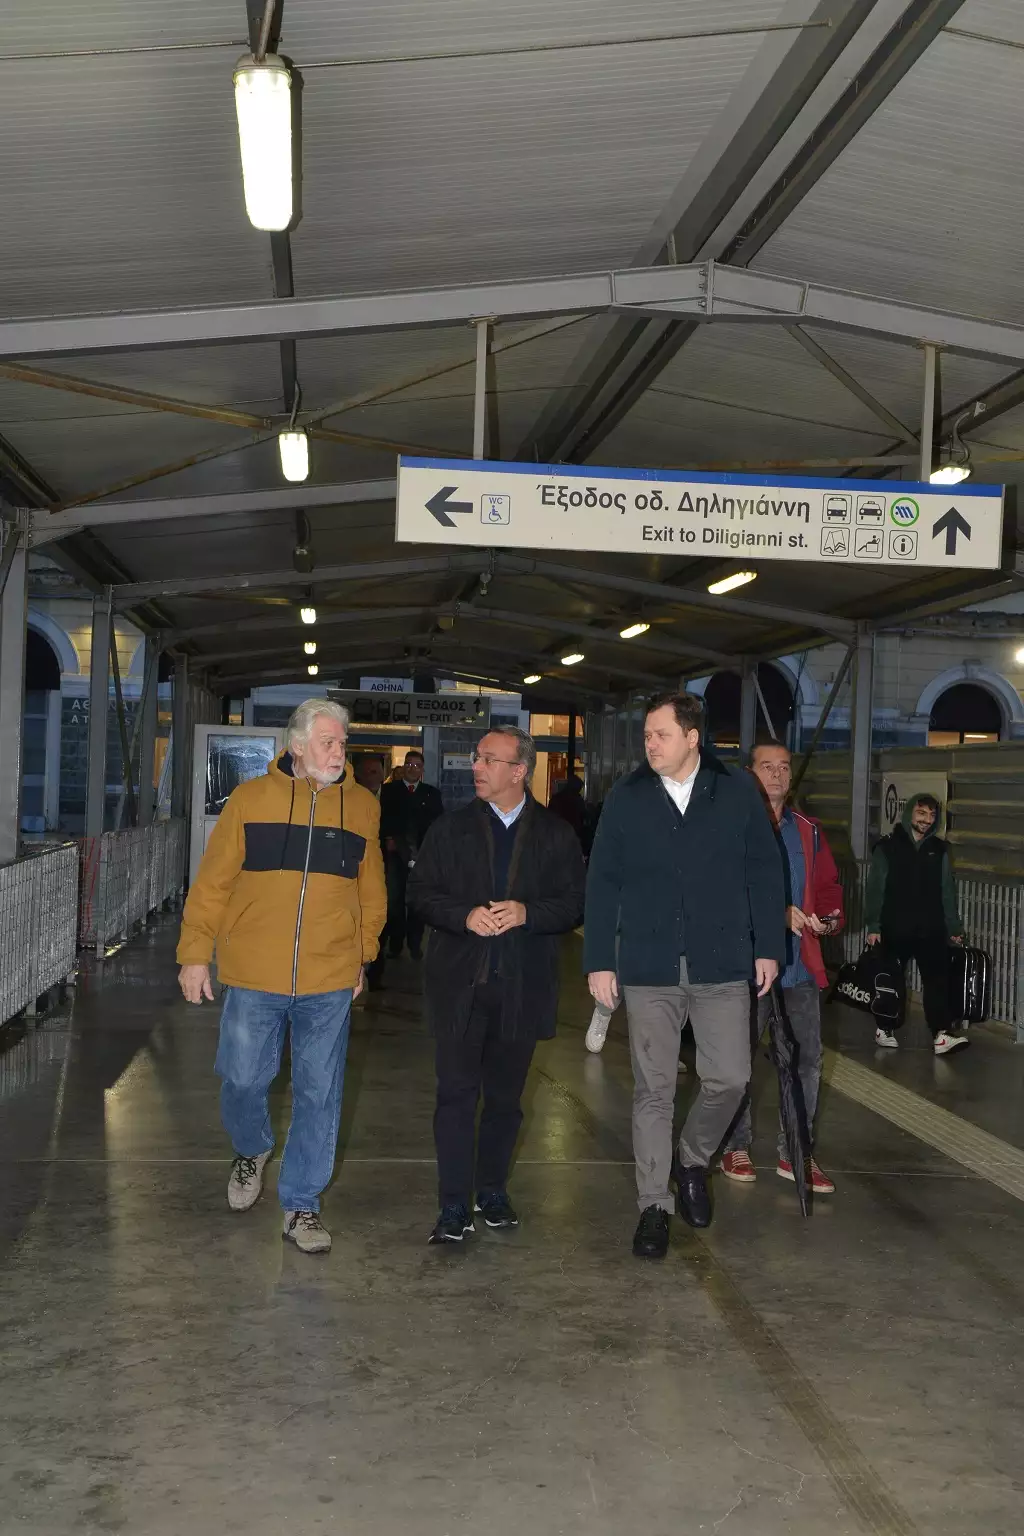 Χρήστος Σταϊκούρας: Το τρένο μπαίνει και πάλι στις ράγες από την Αθήνα μέχρι τη Θεσσαλονίκη